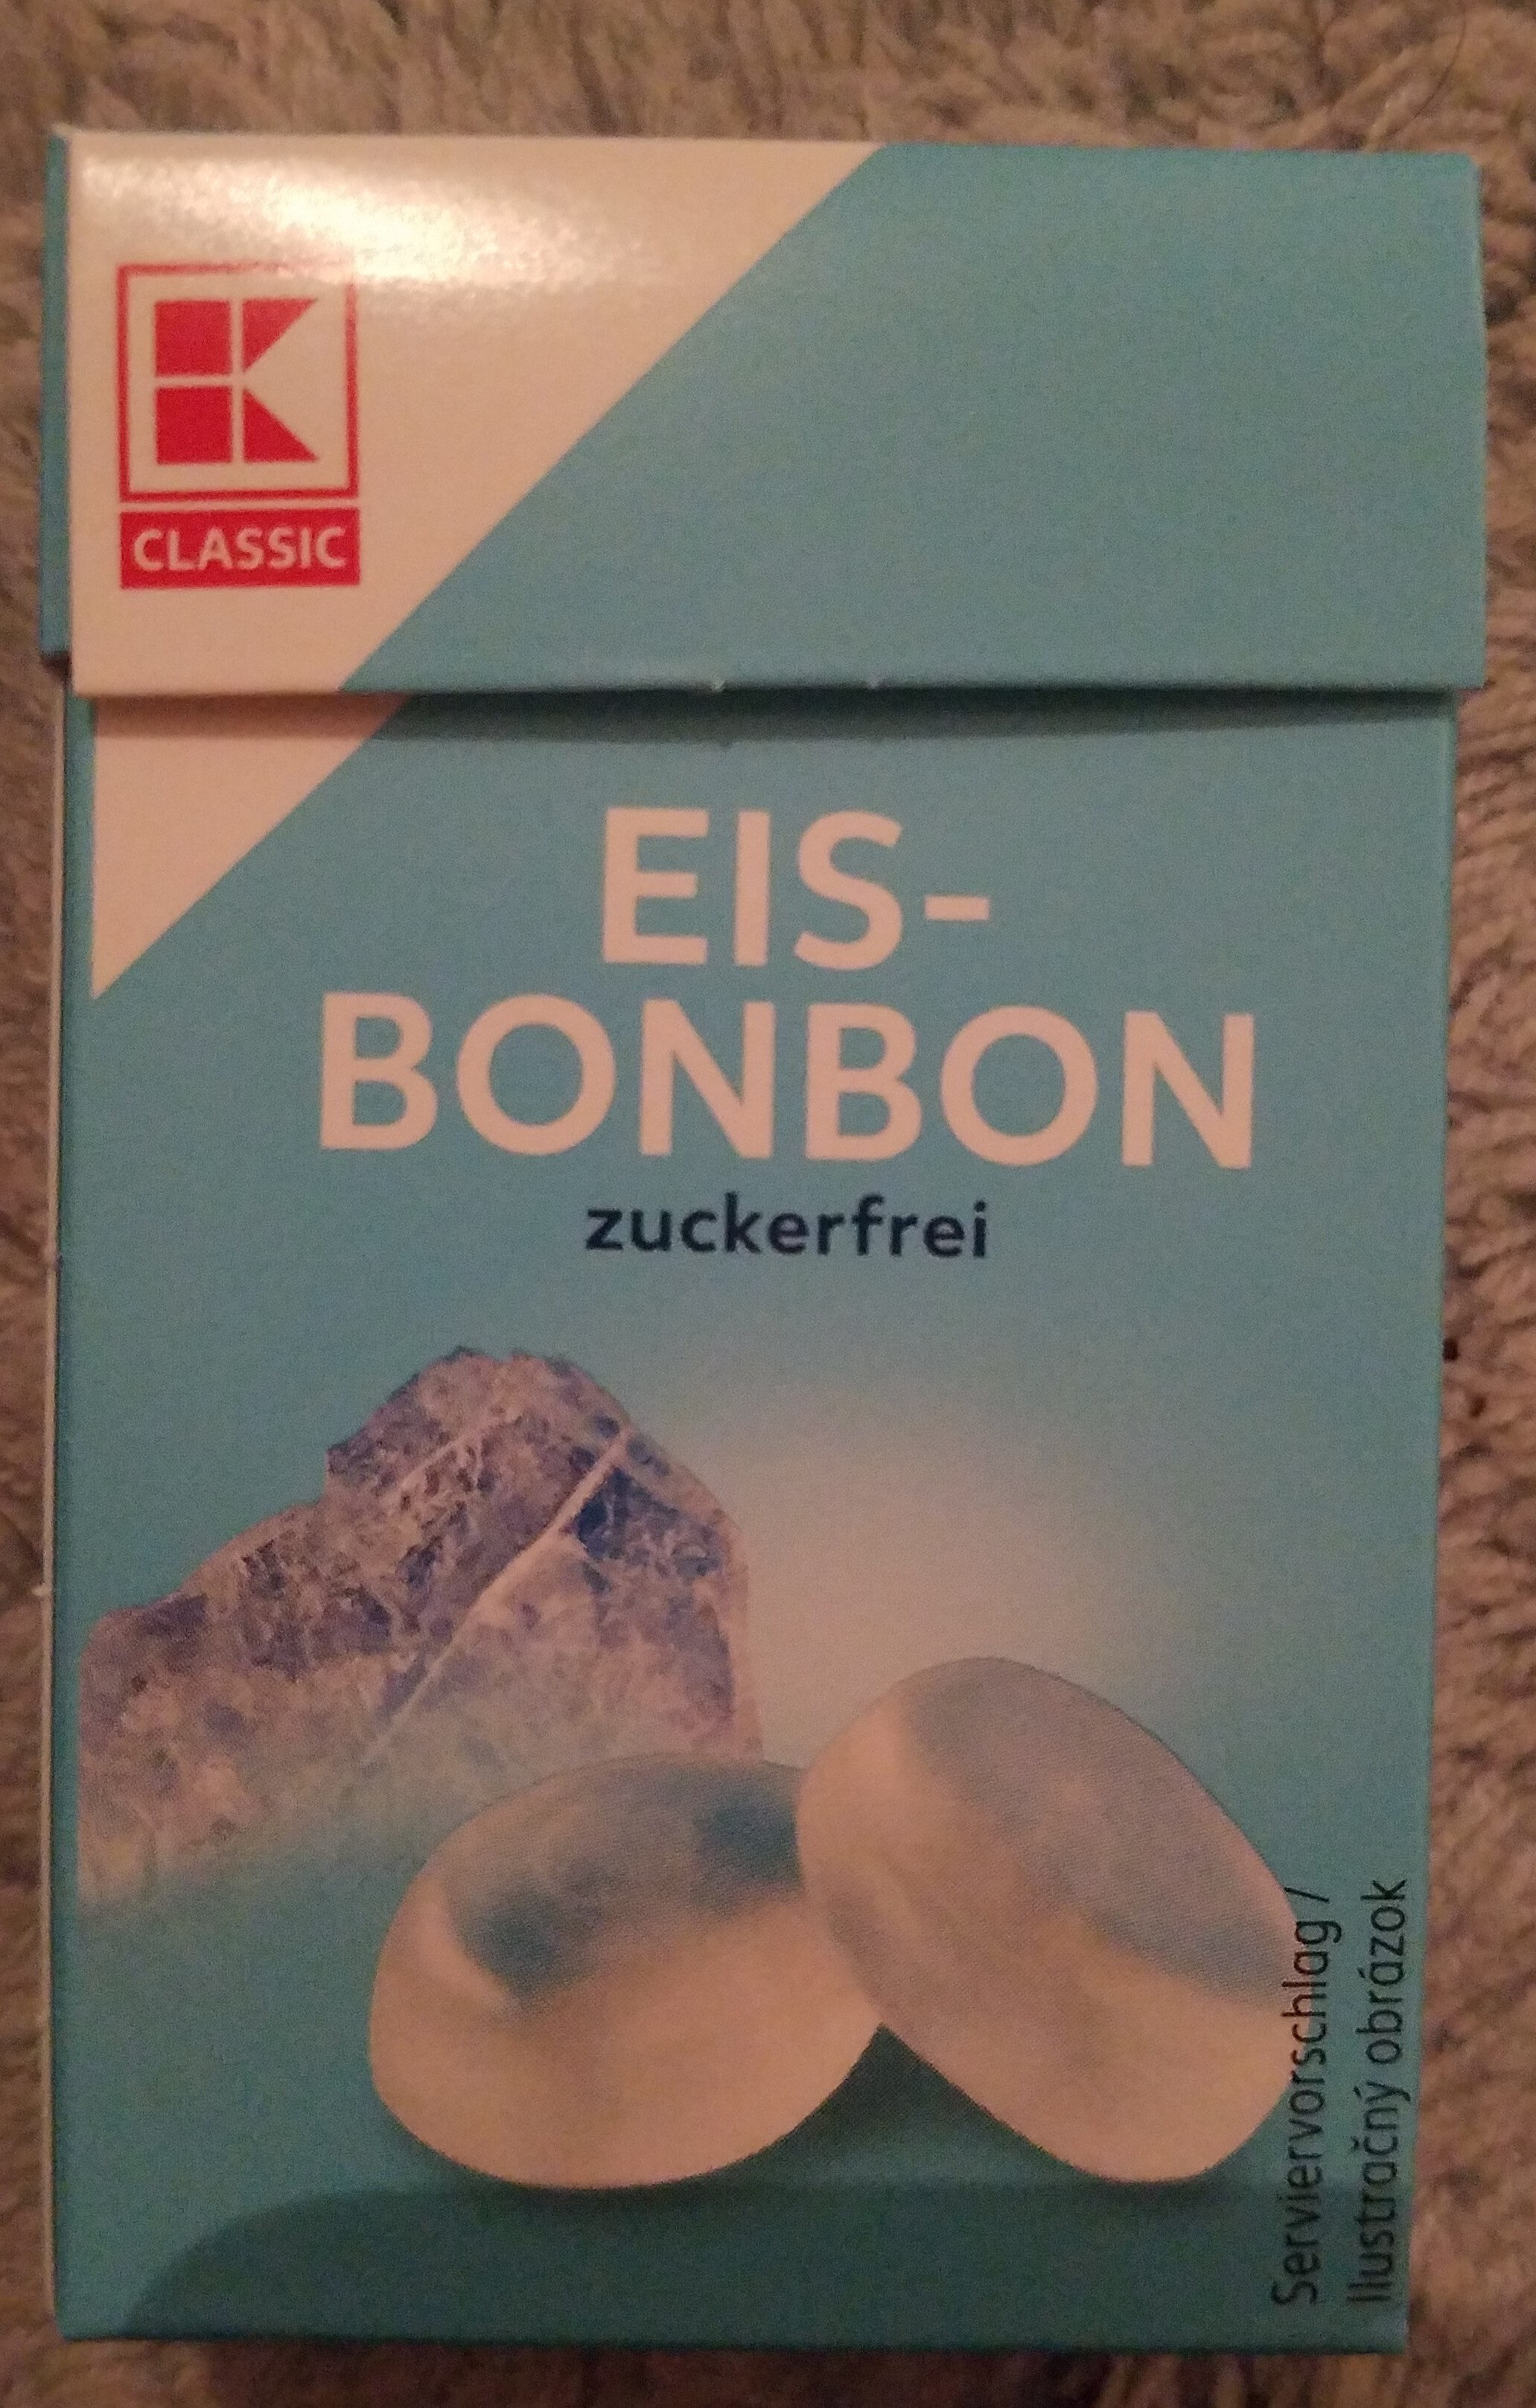 Eis-BonBon zuckerfrei - Product - de